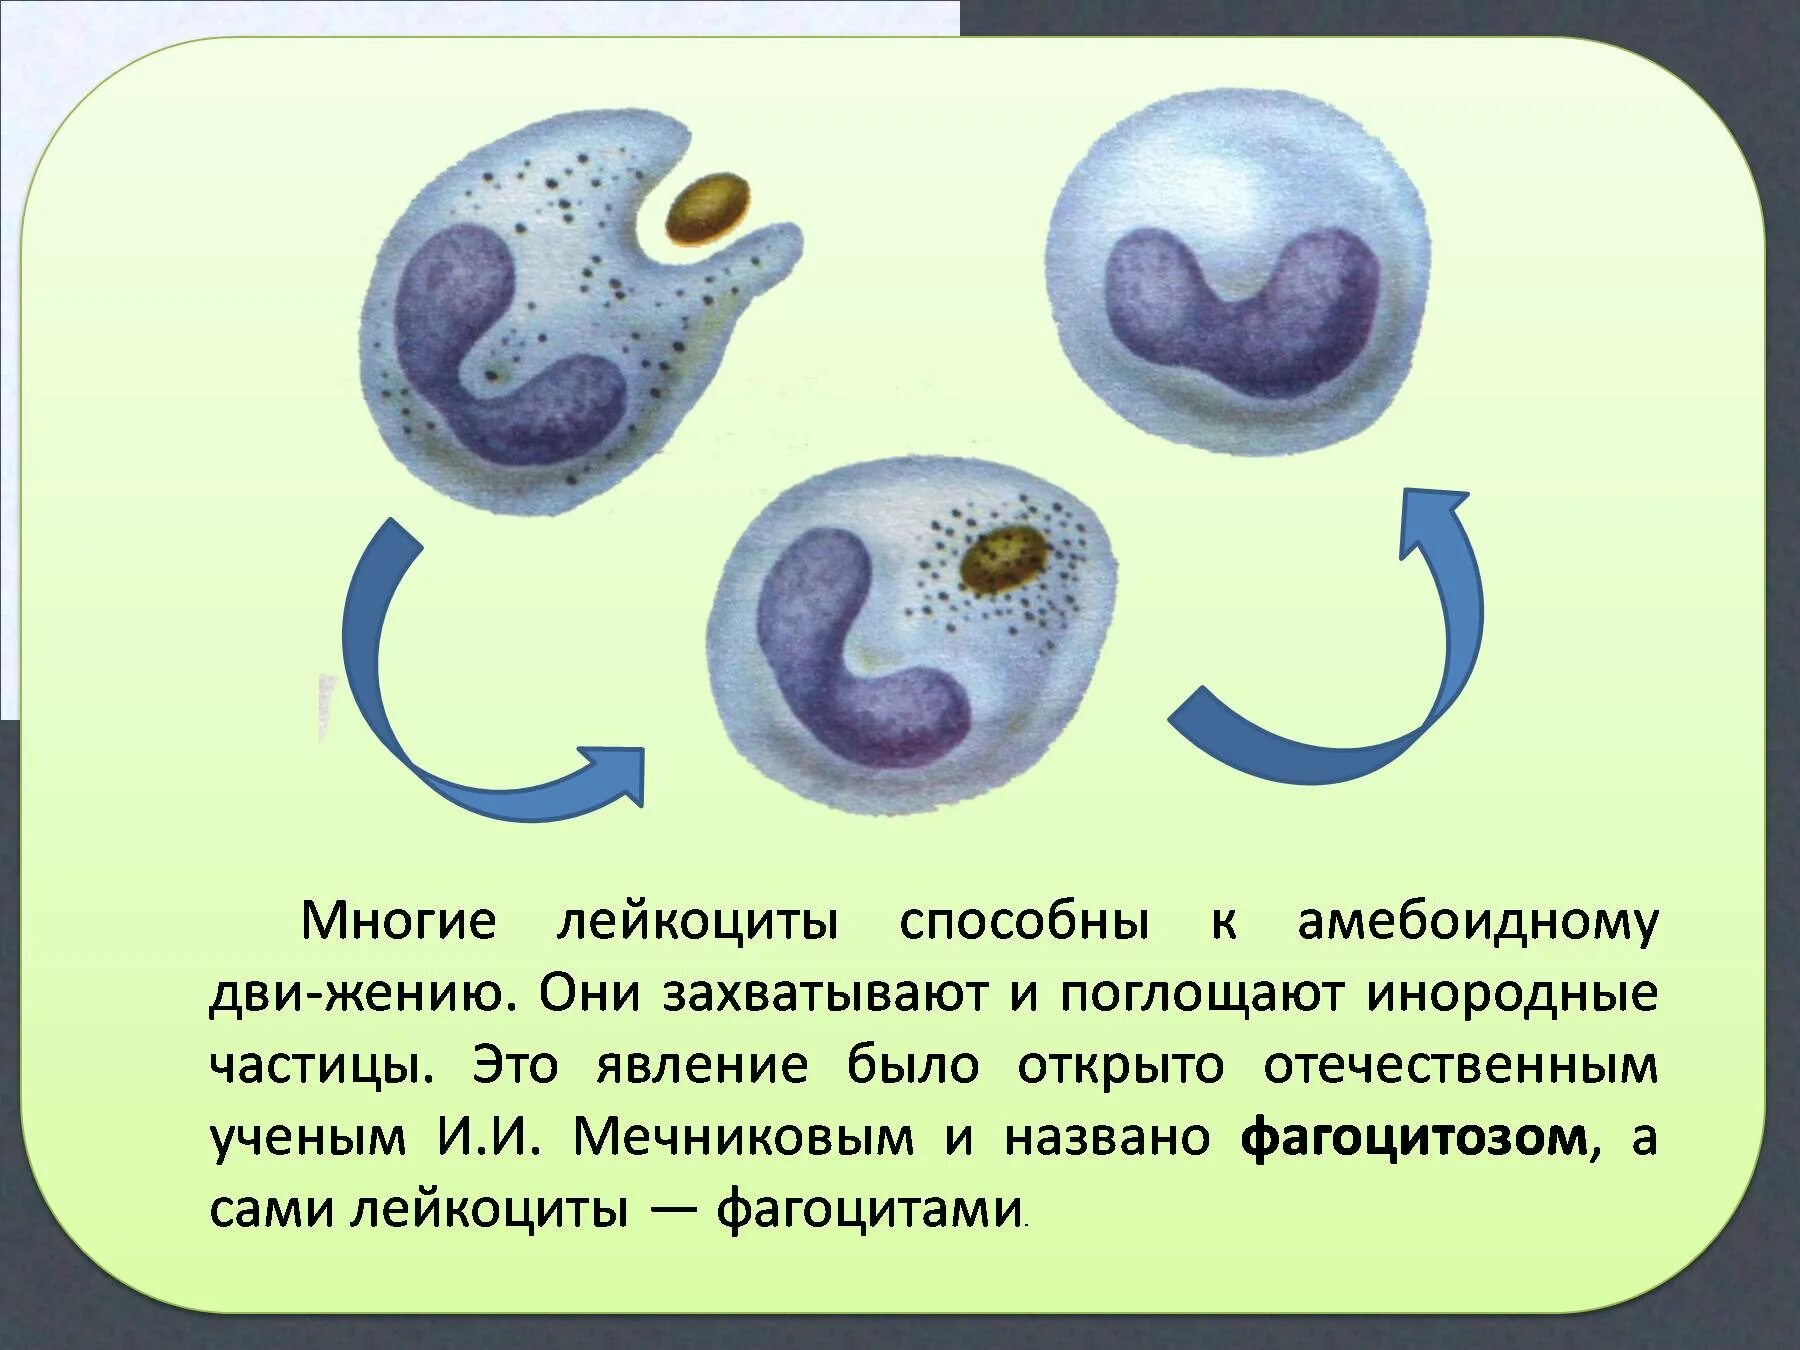 Эритроциты фагоциты лейкоциты. Лейкоциты способные к амебоидному движению. Передвижение лейкоцитов. Фагоцитоз лейкоцитов.